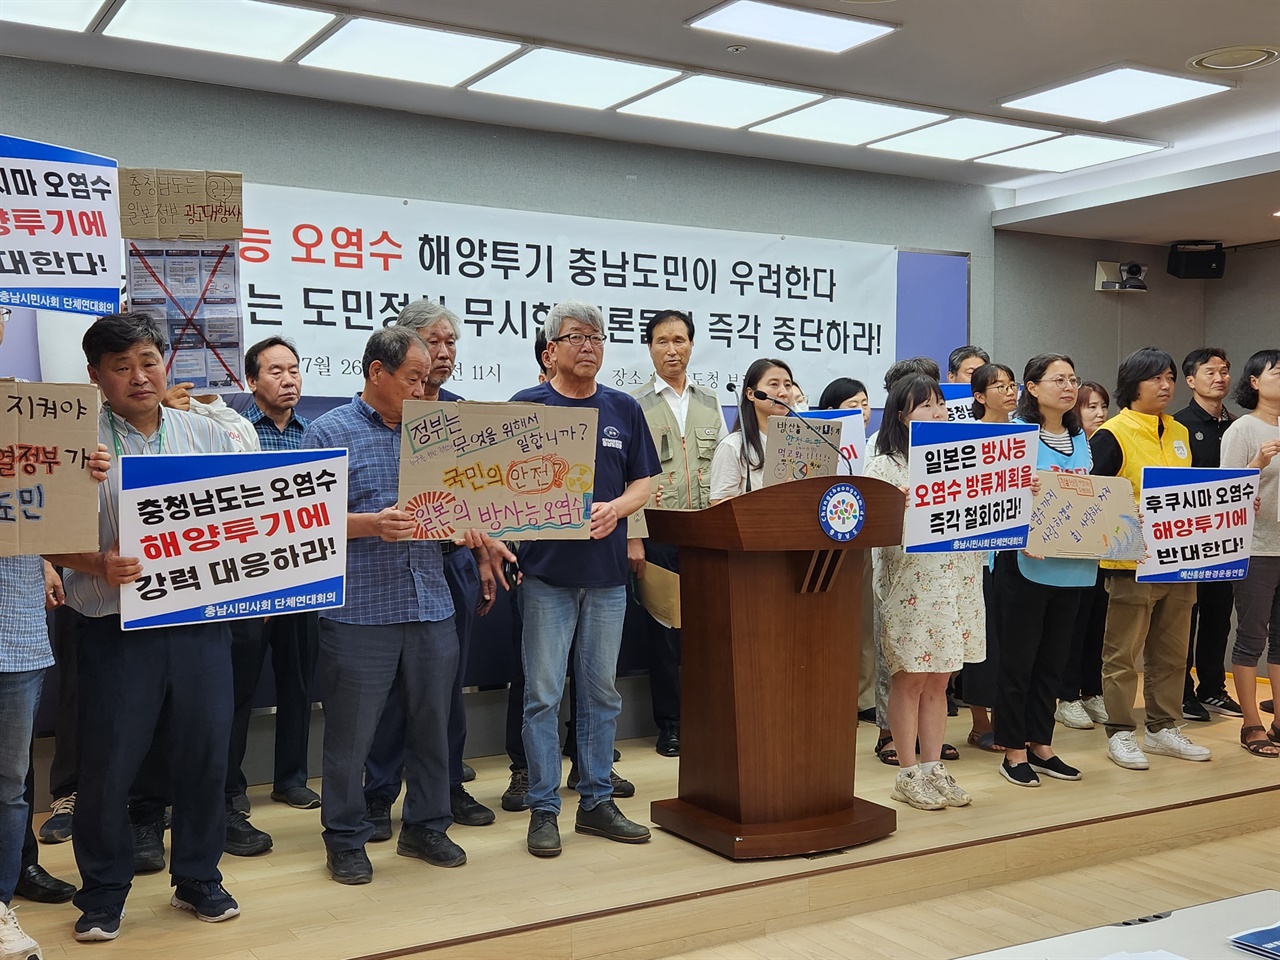 지난 26일 충남시민사회 단체들이 '일본 원전 오염수 방류'를 옹호한 충남도정신문의 카드뉴스를 비판하며 기자회견을 열고 있다. 